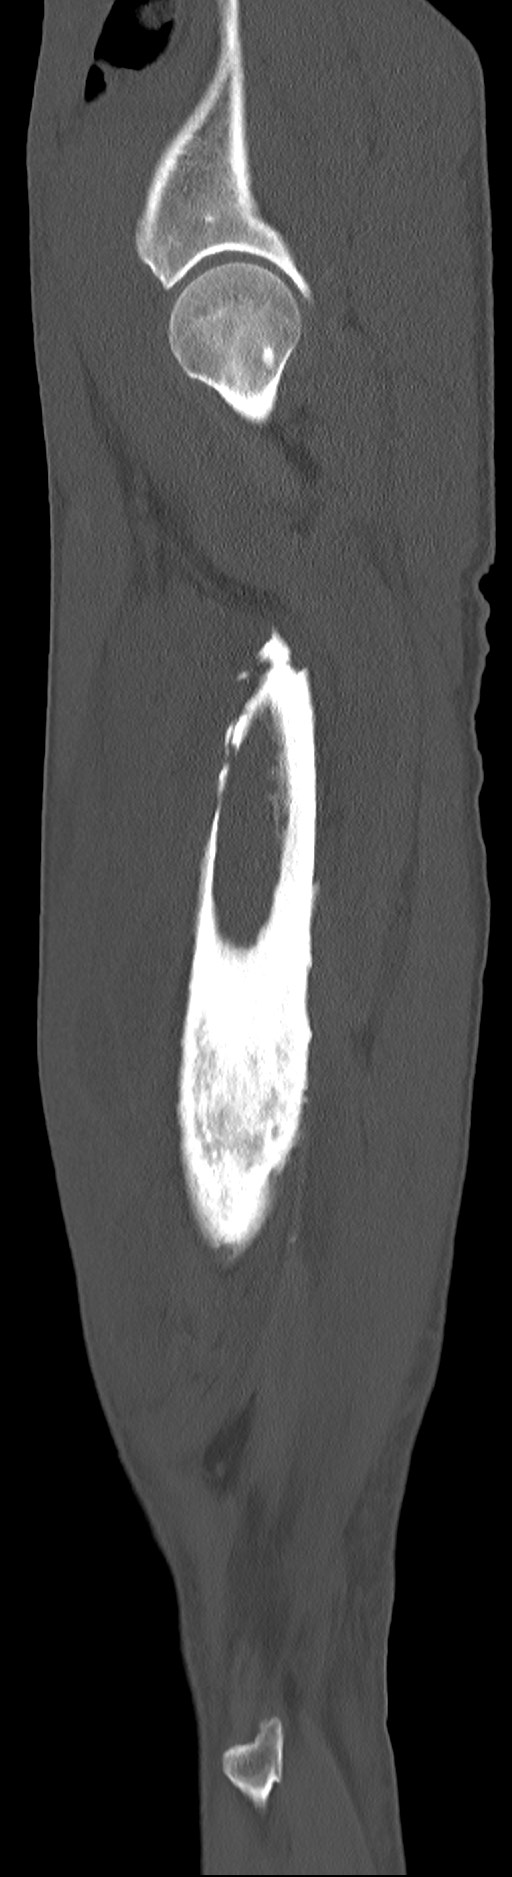 Chronic osteomyelitis (with sequestrum) (Radiopaedia 74813-85822 C 87).jpg